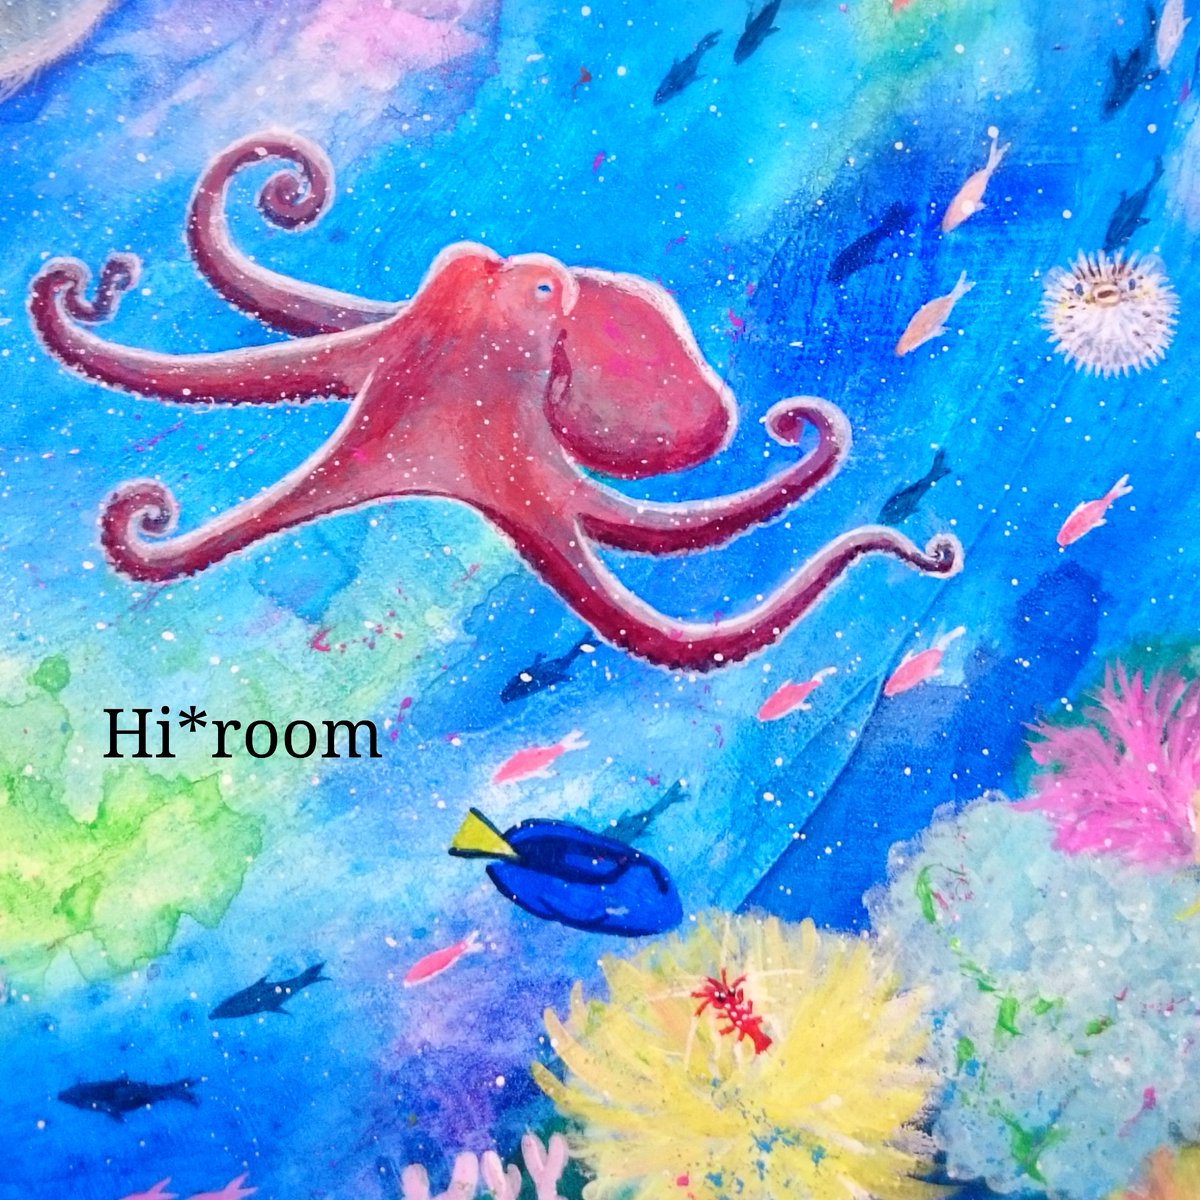 ট ইট র Hi Room ヨリドリ 何故かやる気満々のタコさんに驚くハリセンボン ナンヨウハギはホワイトソックスシュリンプとおしゃべりに夢中 絵の一部分 ドリー エビ 青 Blue アクリル画 Jellyfis Sea 虹色 海の中 イラスト Illustration